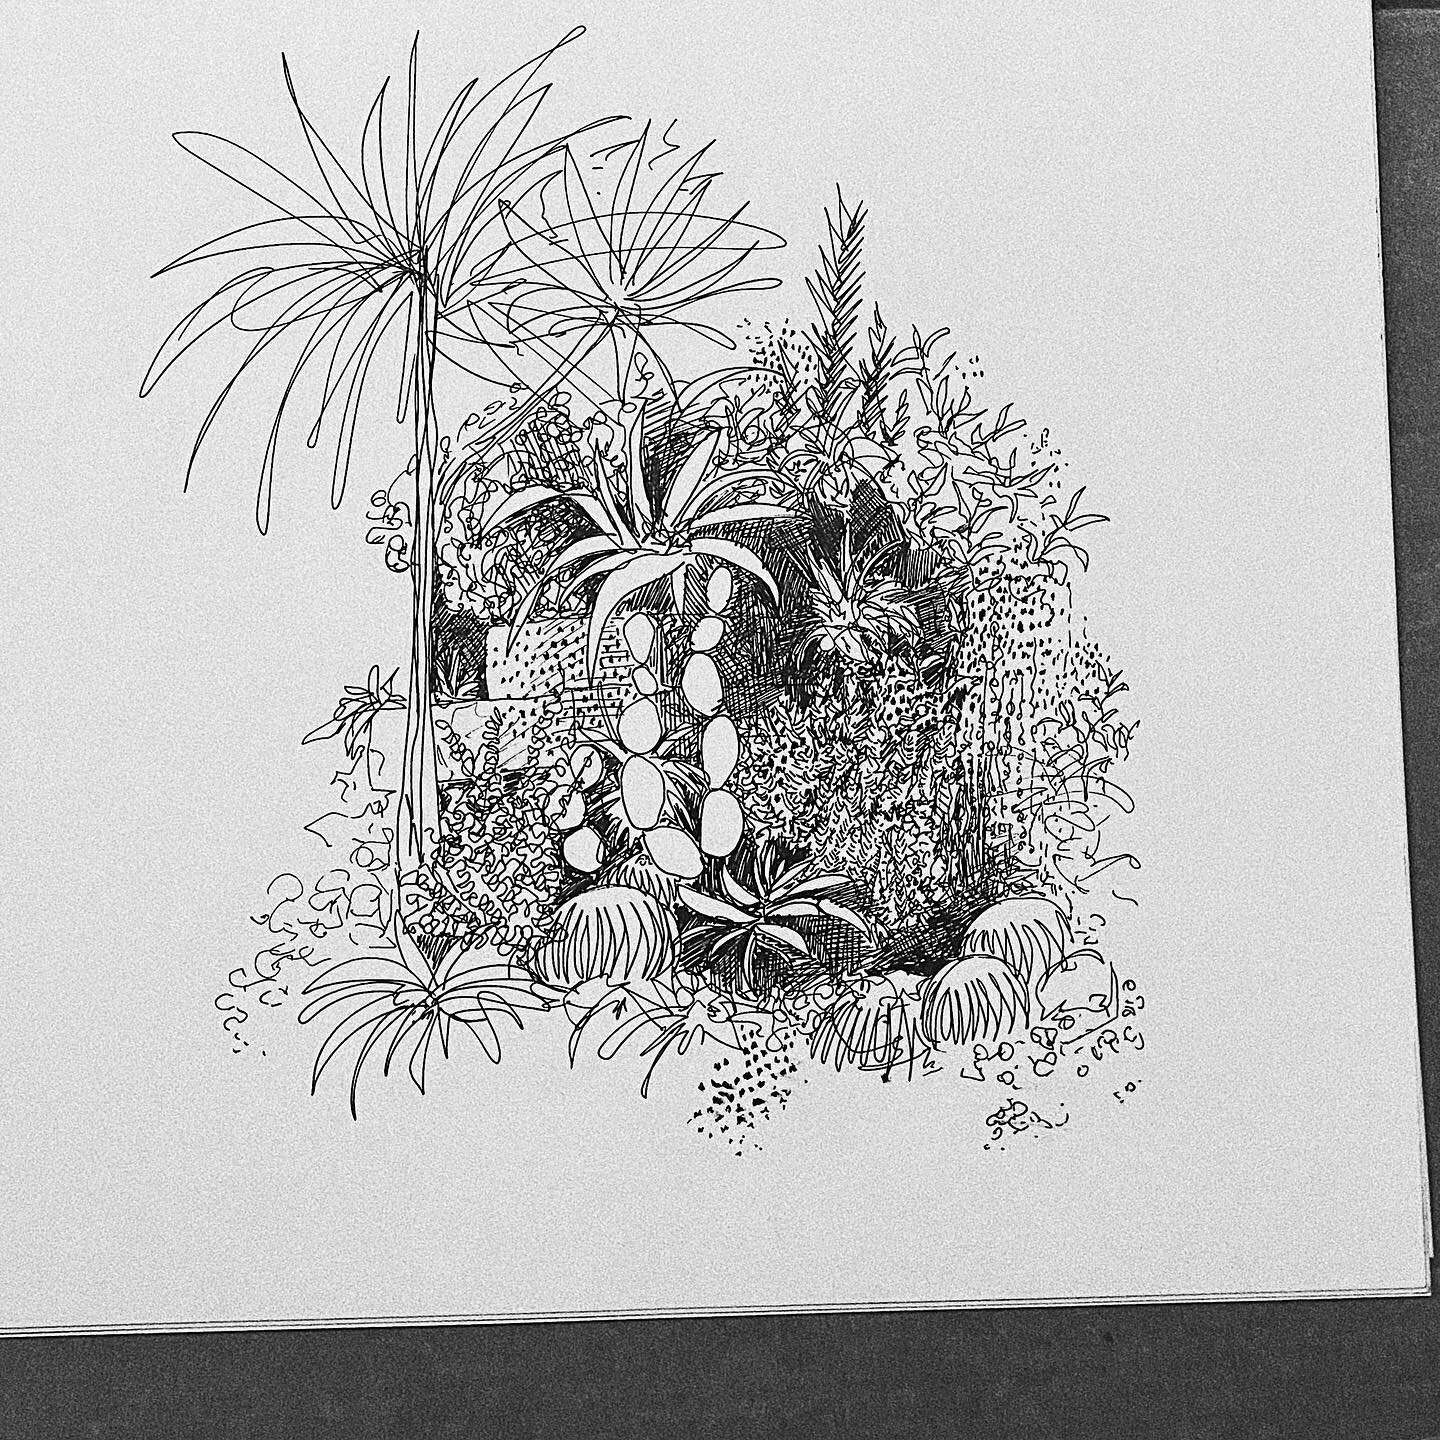 Tropical nursery 🌵 

#plant #drawing #draweveryday #sketchesofinstagram #inkdrawing #ink #femaleartist #artist #art #plantsofinstagram #plantlife